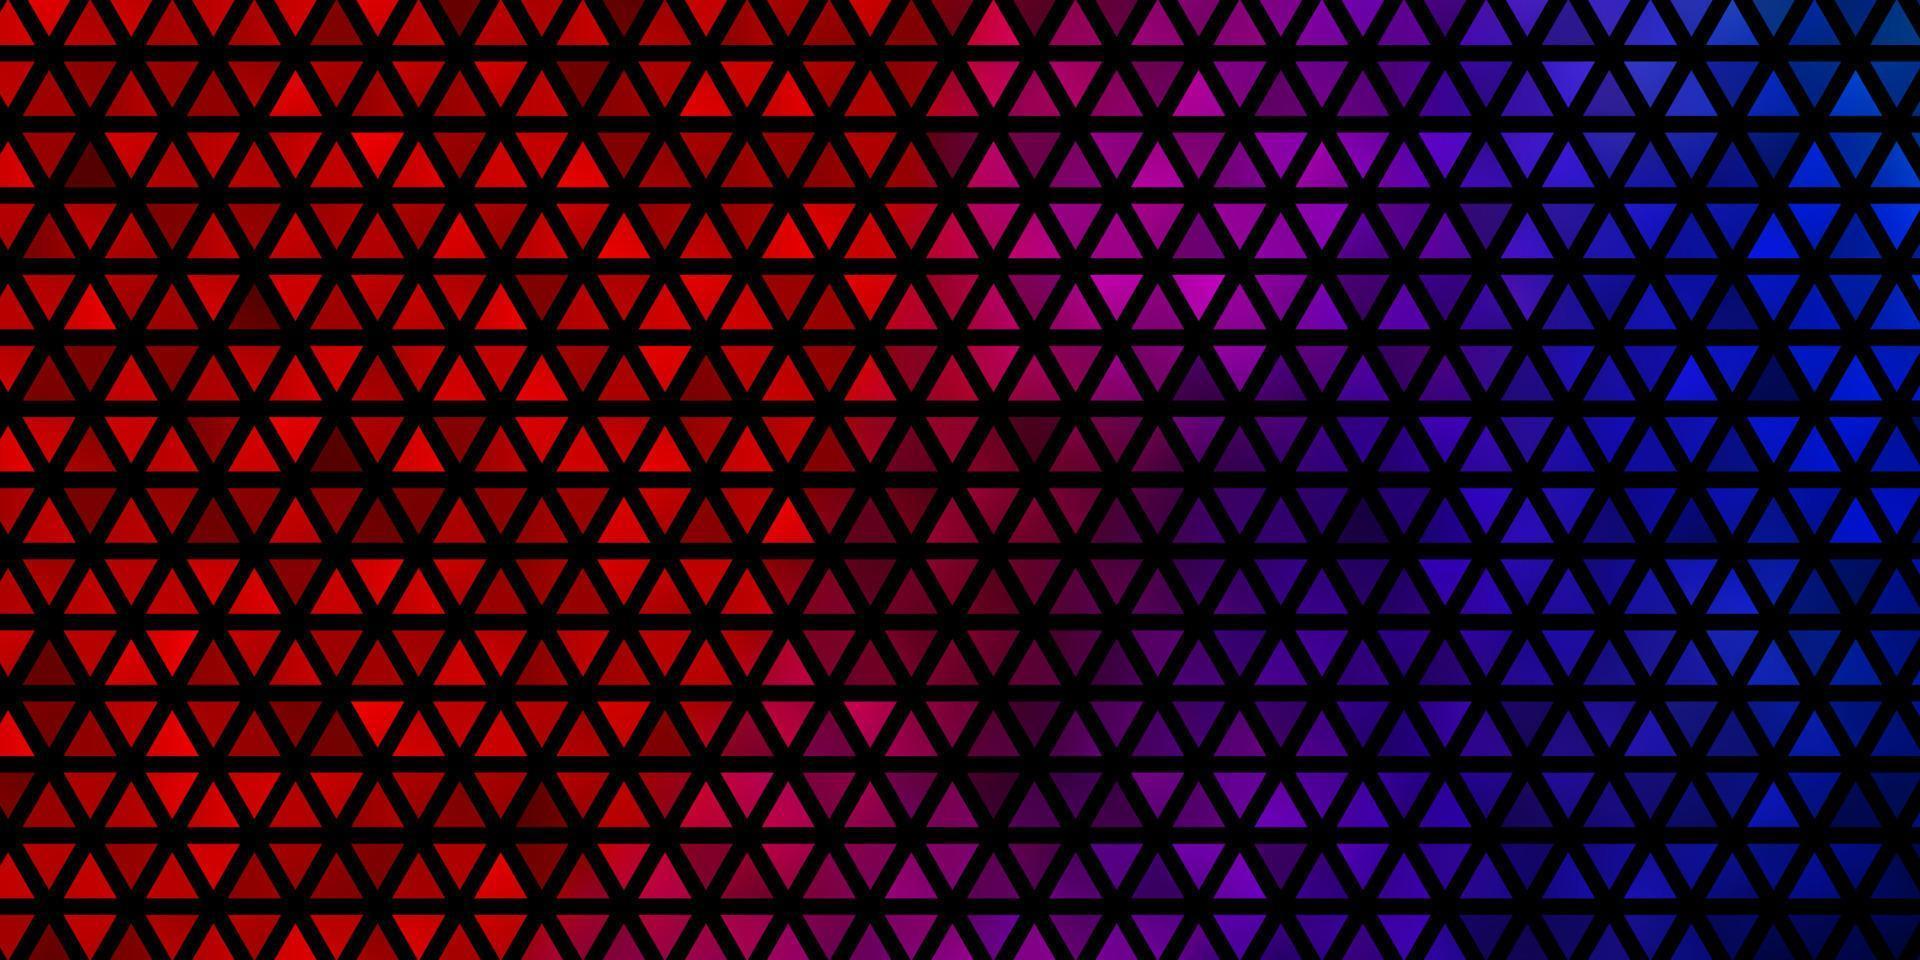 fond de vecteur bleu clair, rouge avec des triangles.